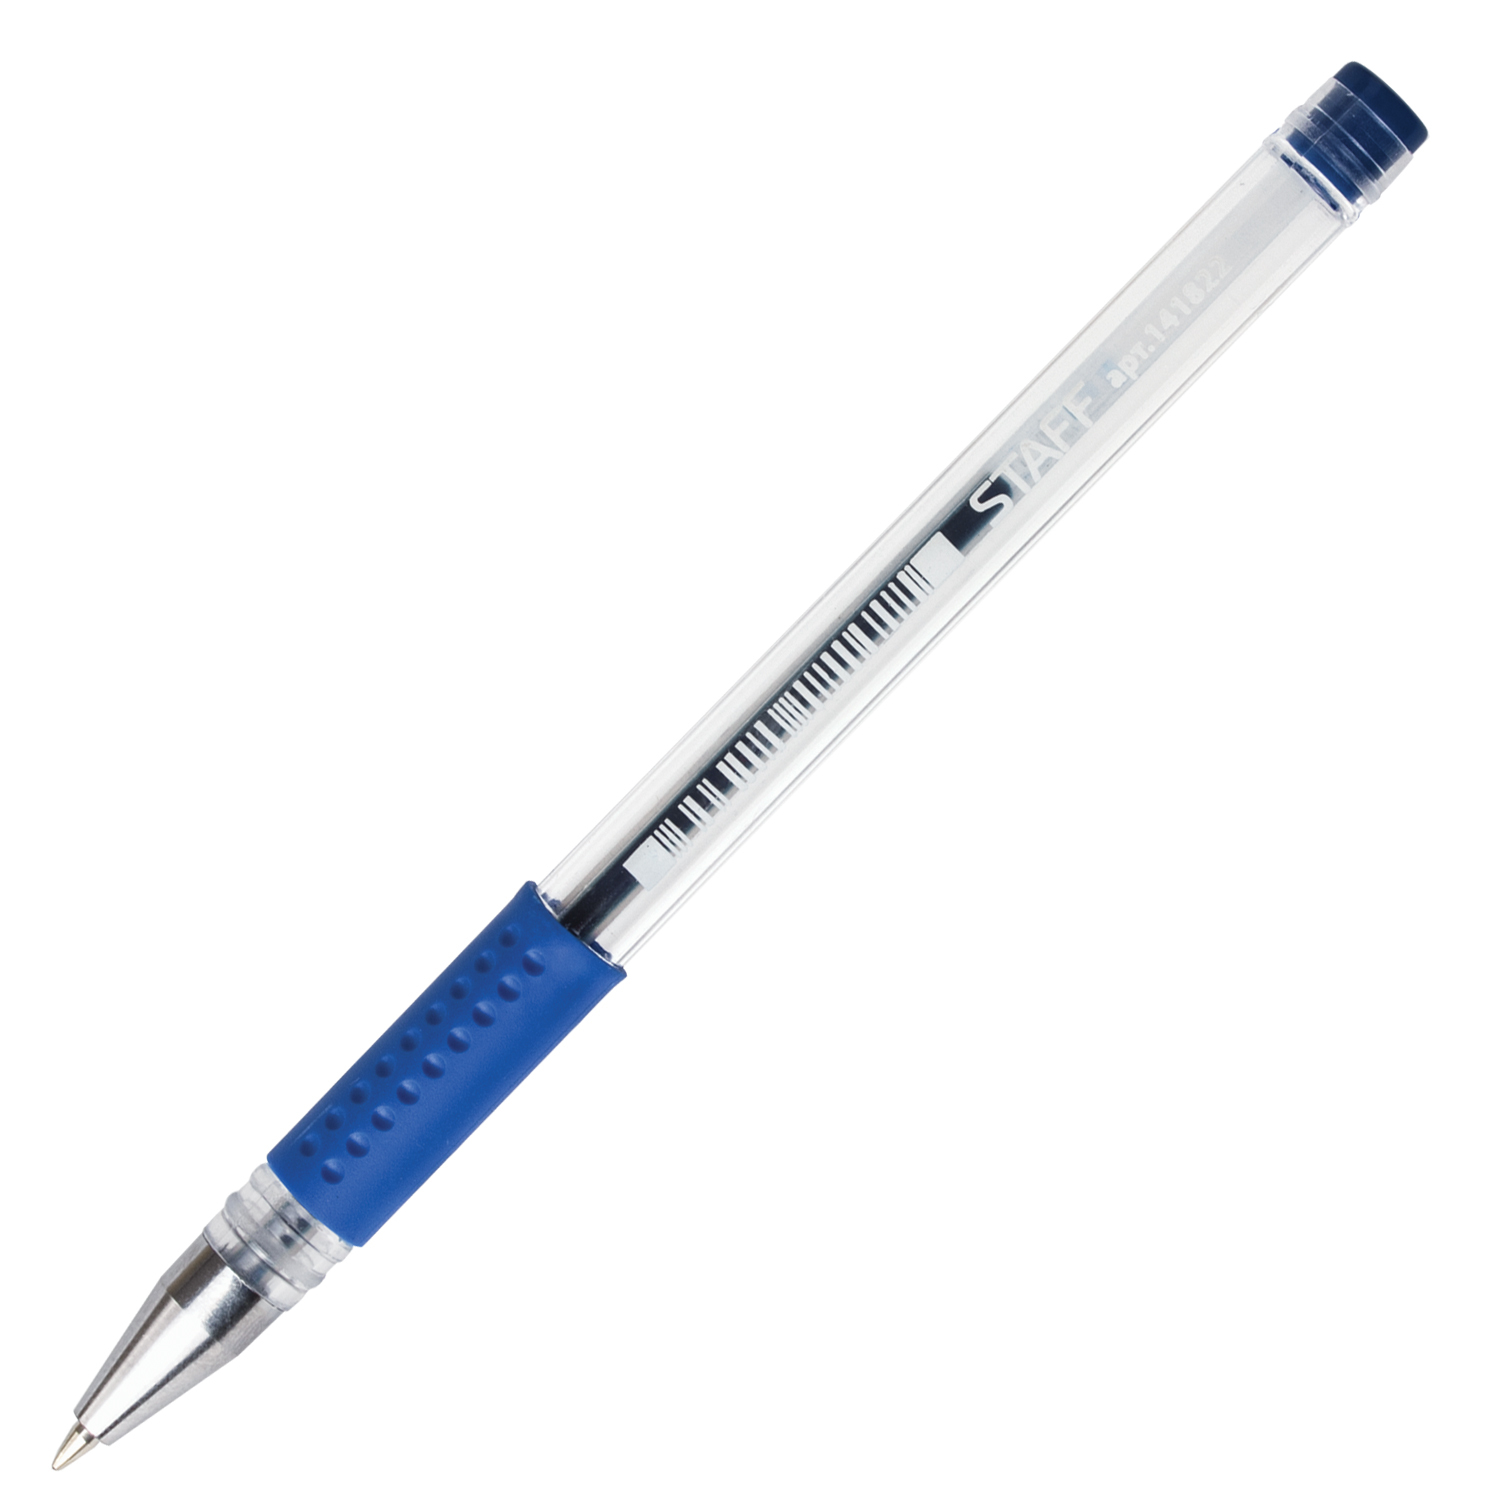 Письма 0 5 мм. Ручка гелевая с грипом staff 0.5мм 141822 синяя. Ручка гелевая синяя staff. Ручка гелевая ""x-Gel"" синяя 0.5/129мм корпус тонированный синий Berlingo CGP_50121. Ручка гелевая staff, 0.35/0.5мм, прозрачный корпус, синяя.